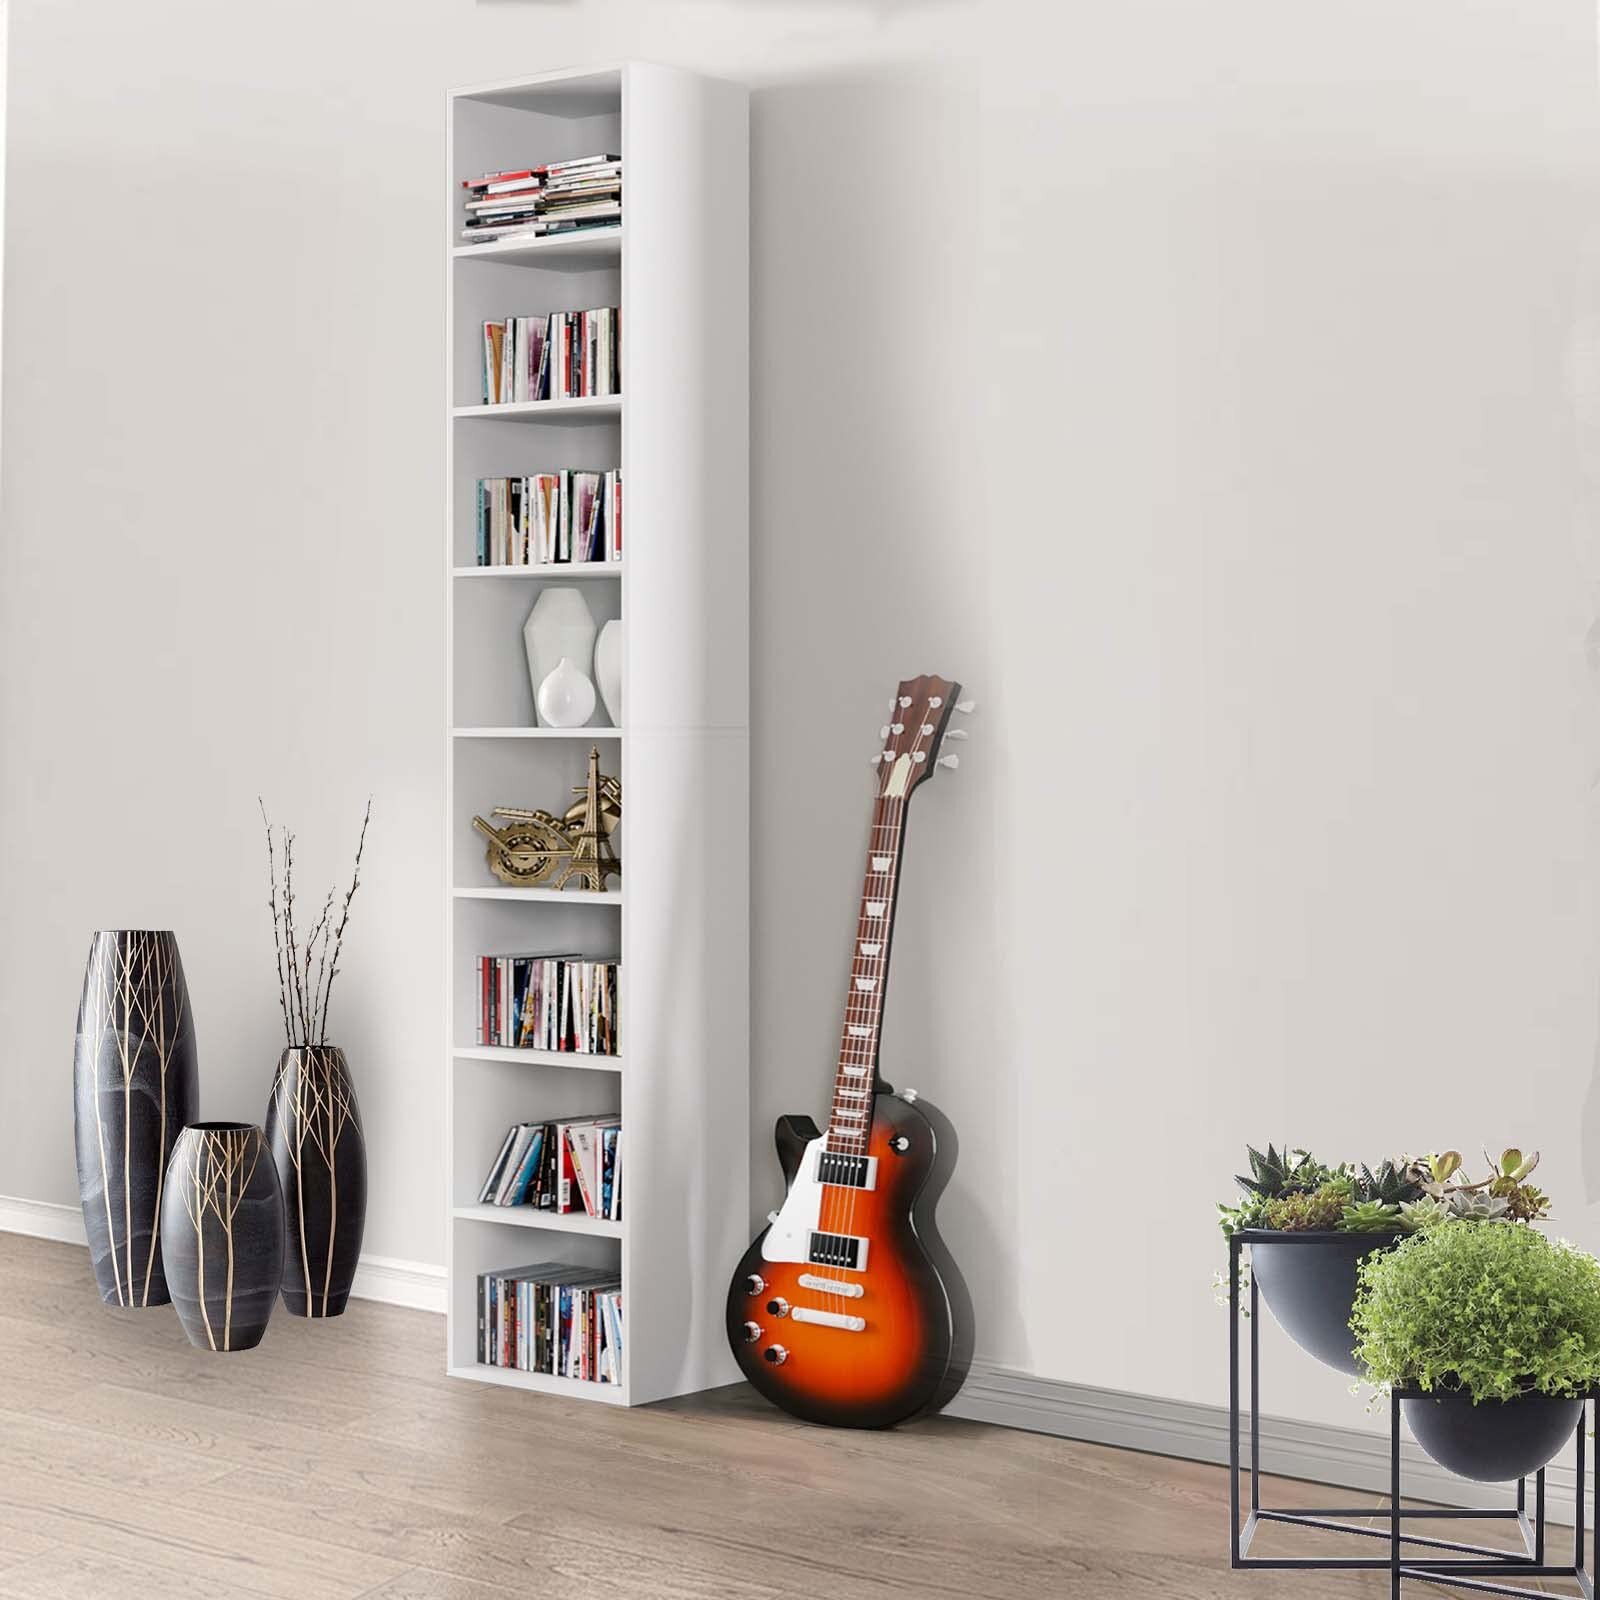 https://assets.wfcdn.com/im/23826646/compr-r85/1886/188650985/gracyn-8-tier-narrow-bookshelf-with-adjustable-shelves.jpg